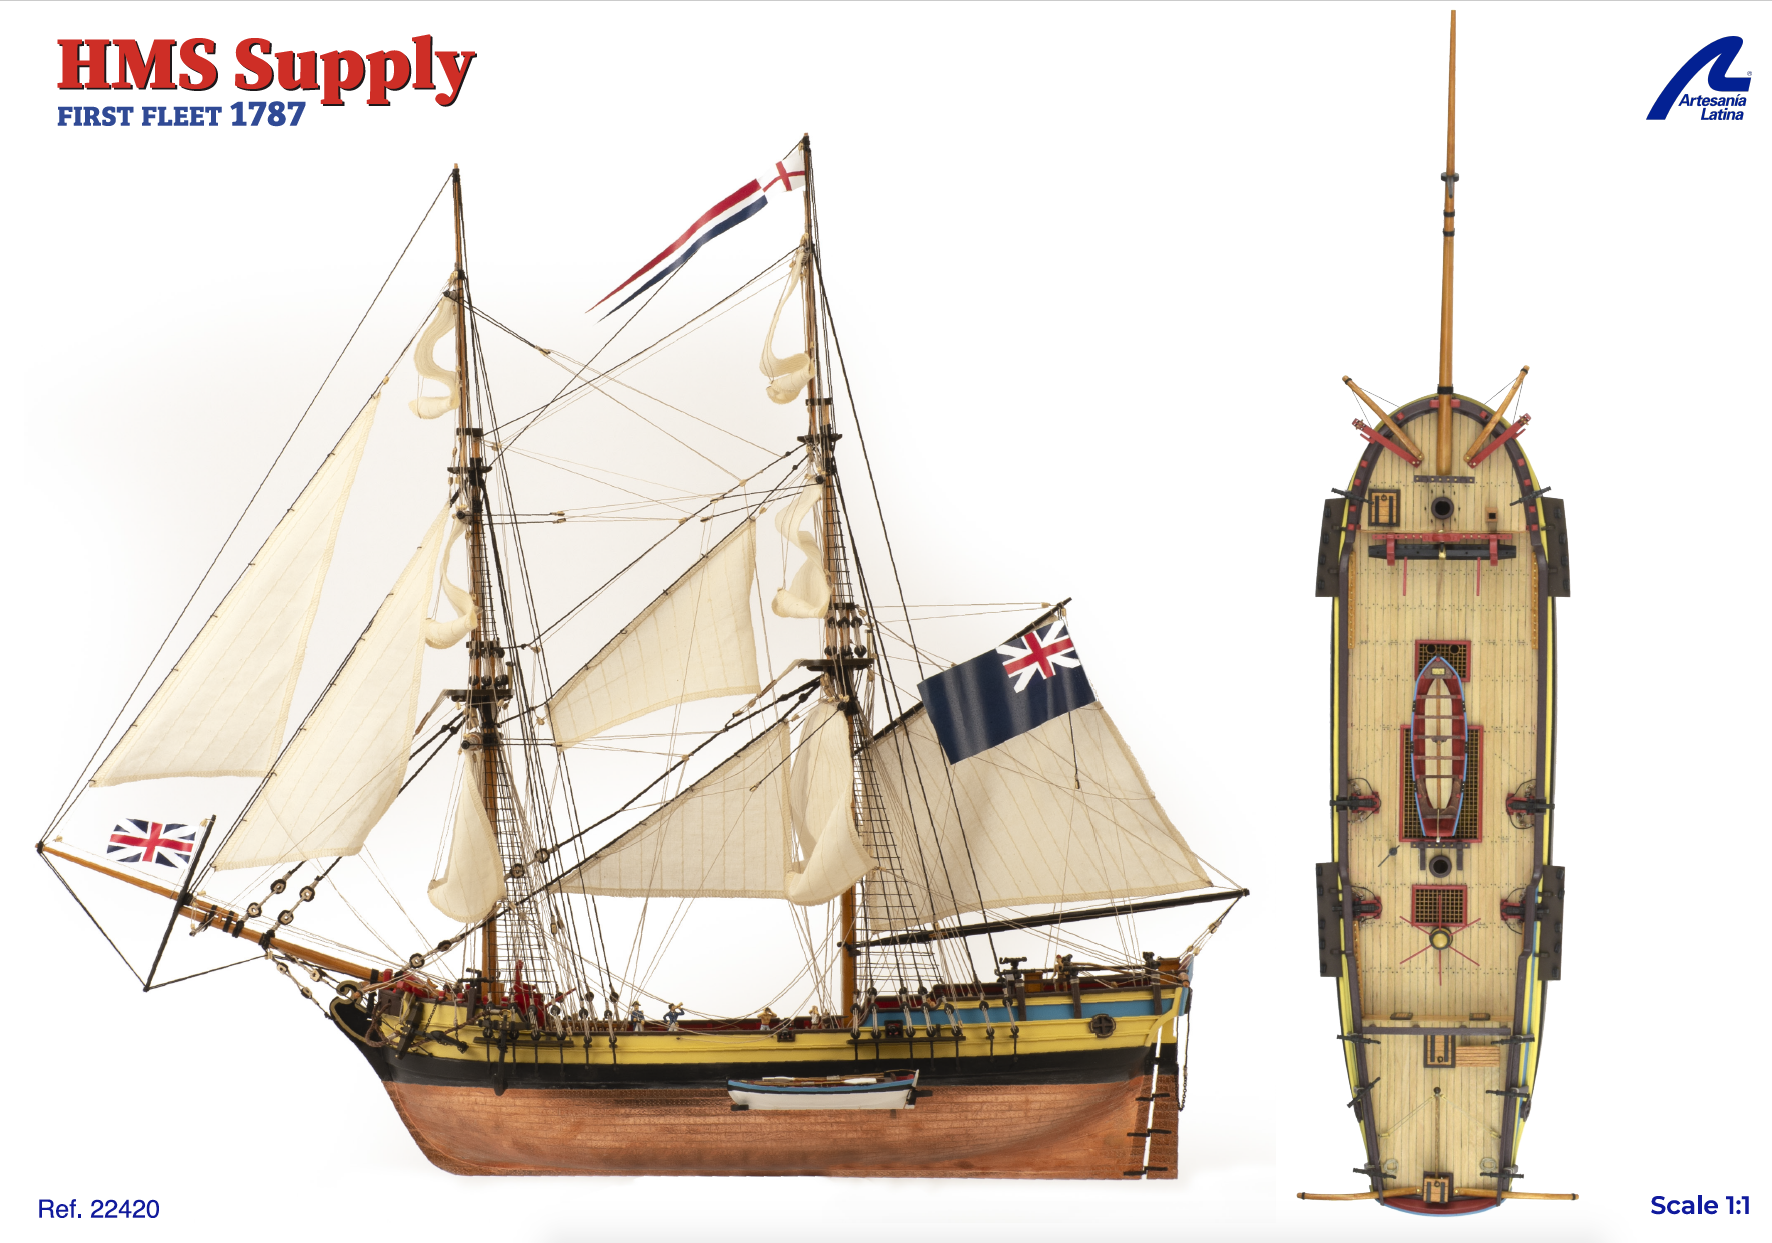 Plano Maqueta Bergantín HMS Supply First Fleet 1797 (22420) de Artesanía Latina.